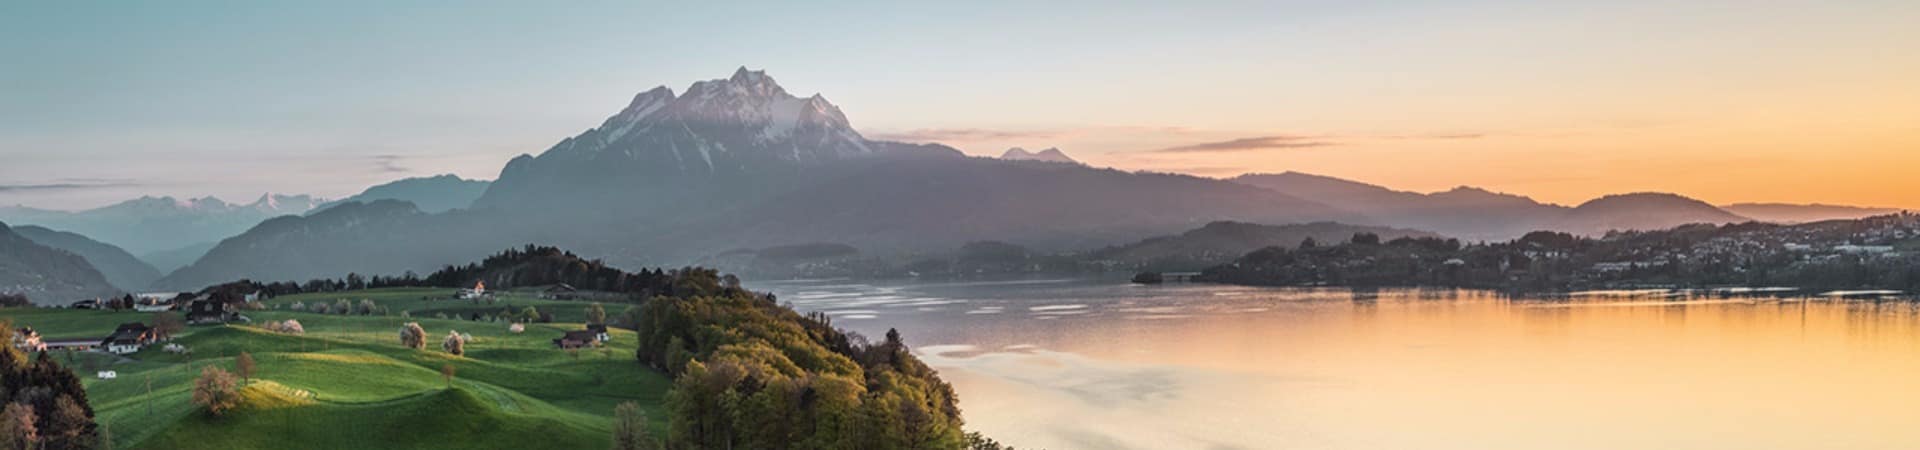 Switzerland tourism vista do lago lucerna andreas gerth